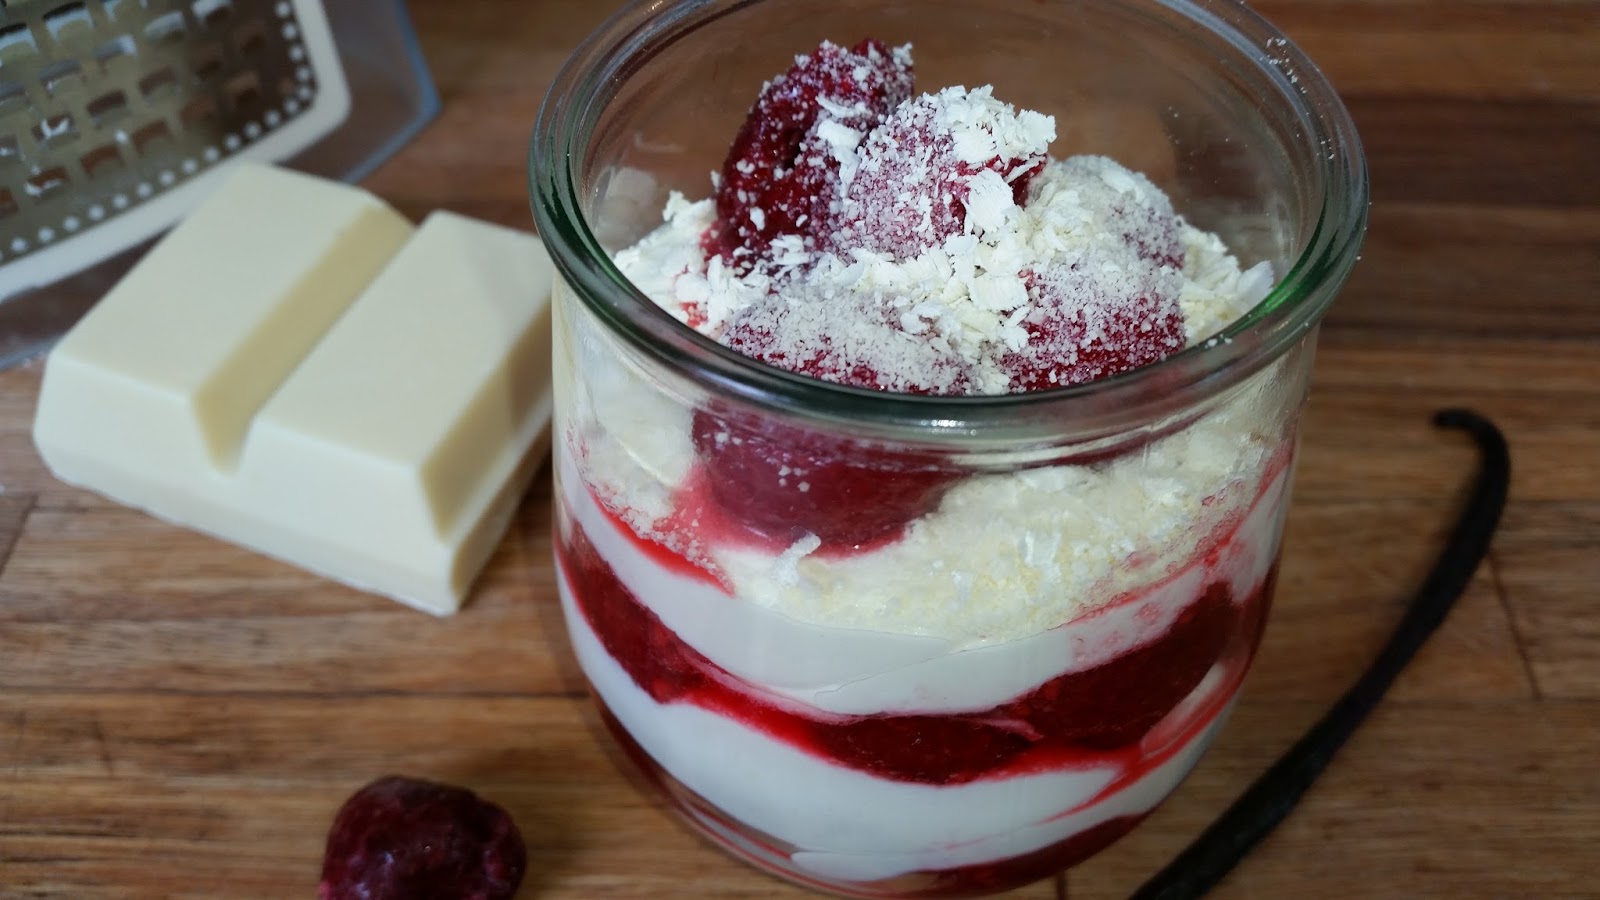 Maxismutti - Martinas Kitchenchaos: Himbeer-Quark-Dessert - ein cremig ...